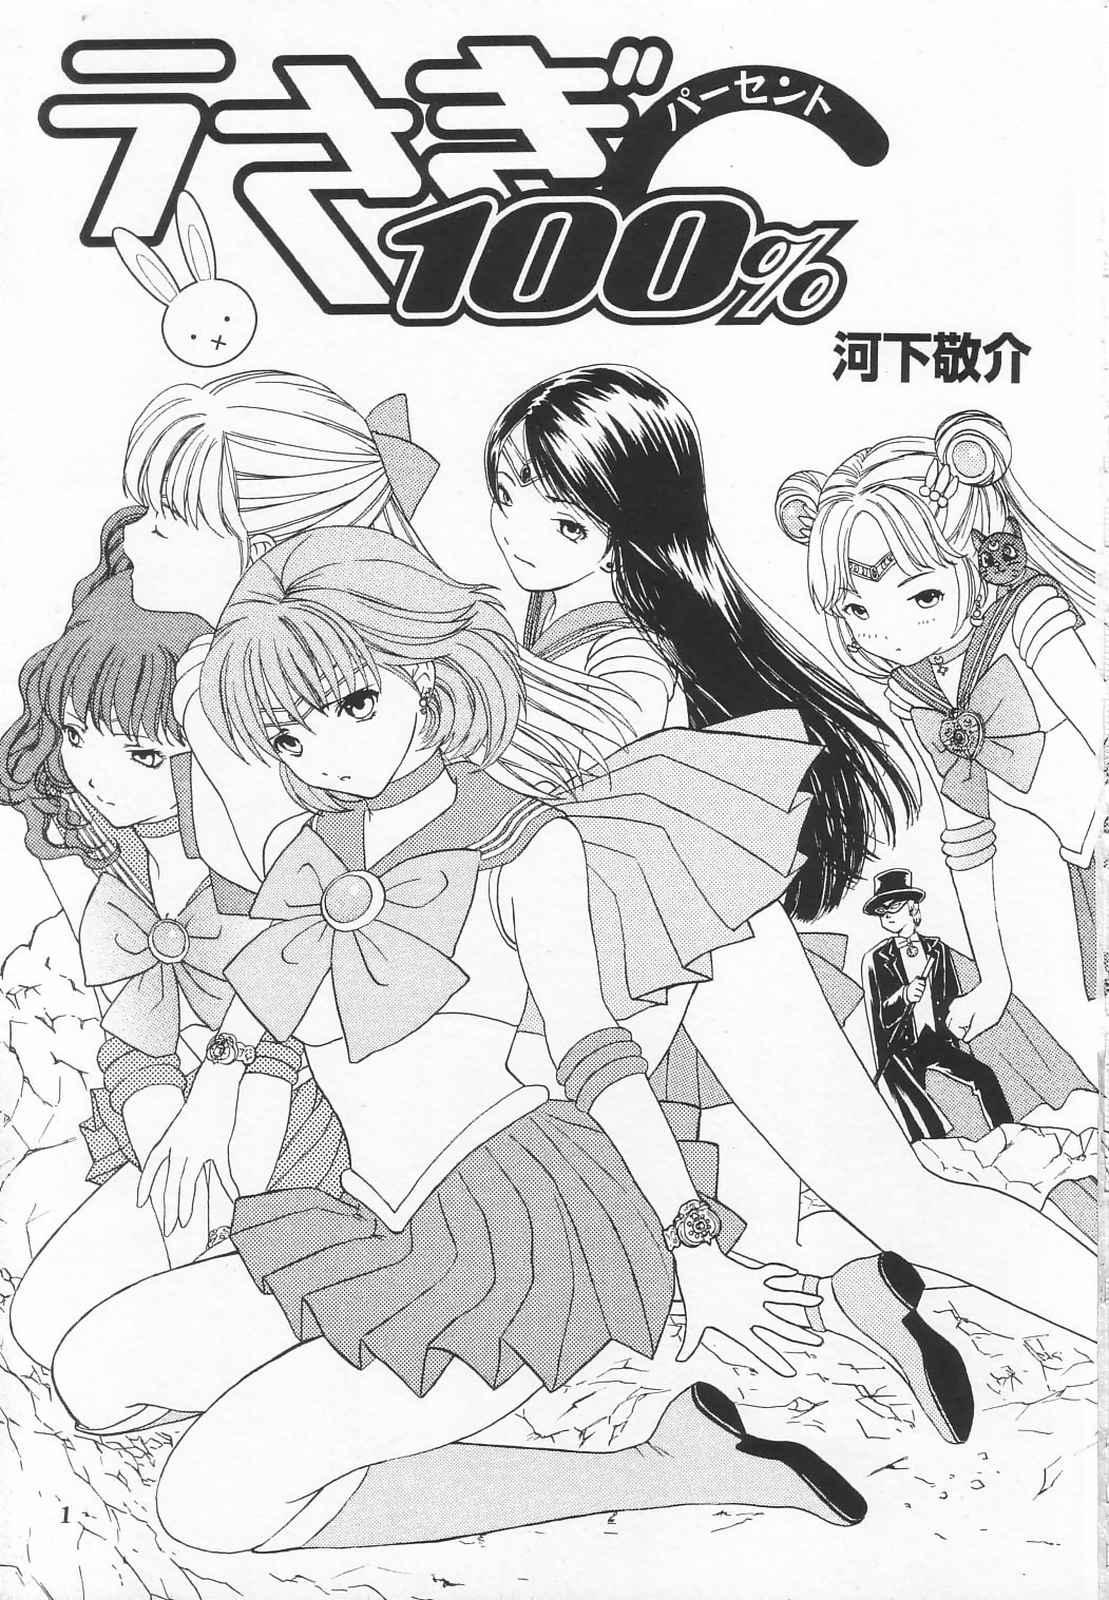 Letsdoeit Tokusatsu Magazine x 2003 Fuyu Gou - Sailor moon Ichigo 100 Asstomouth - Page 3